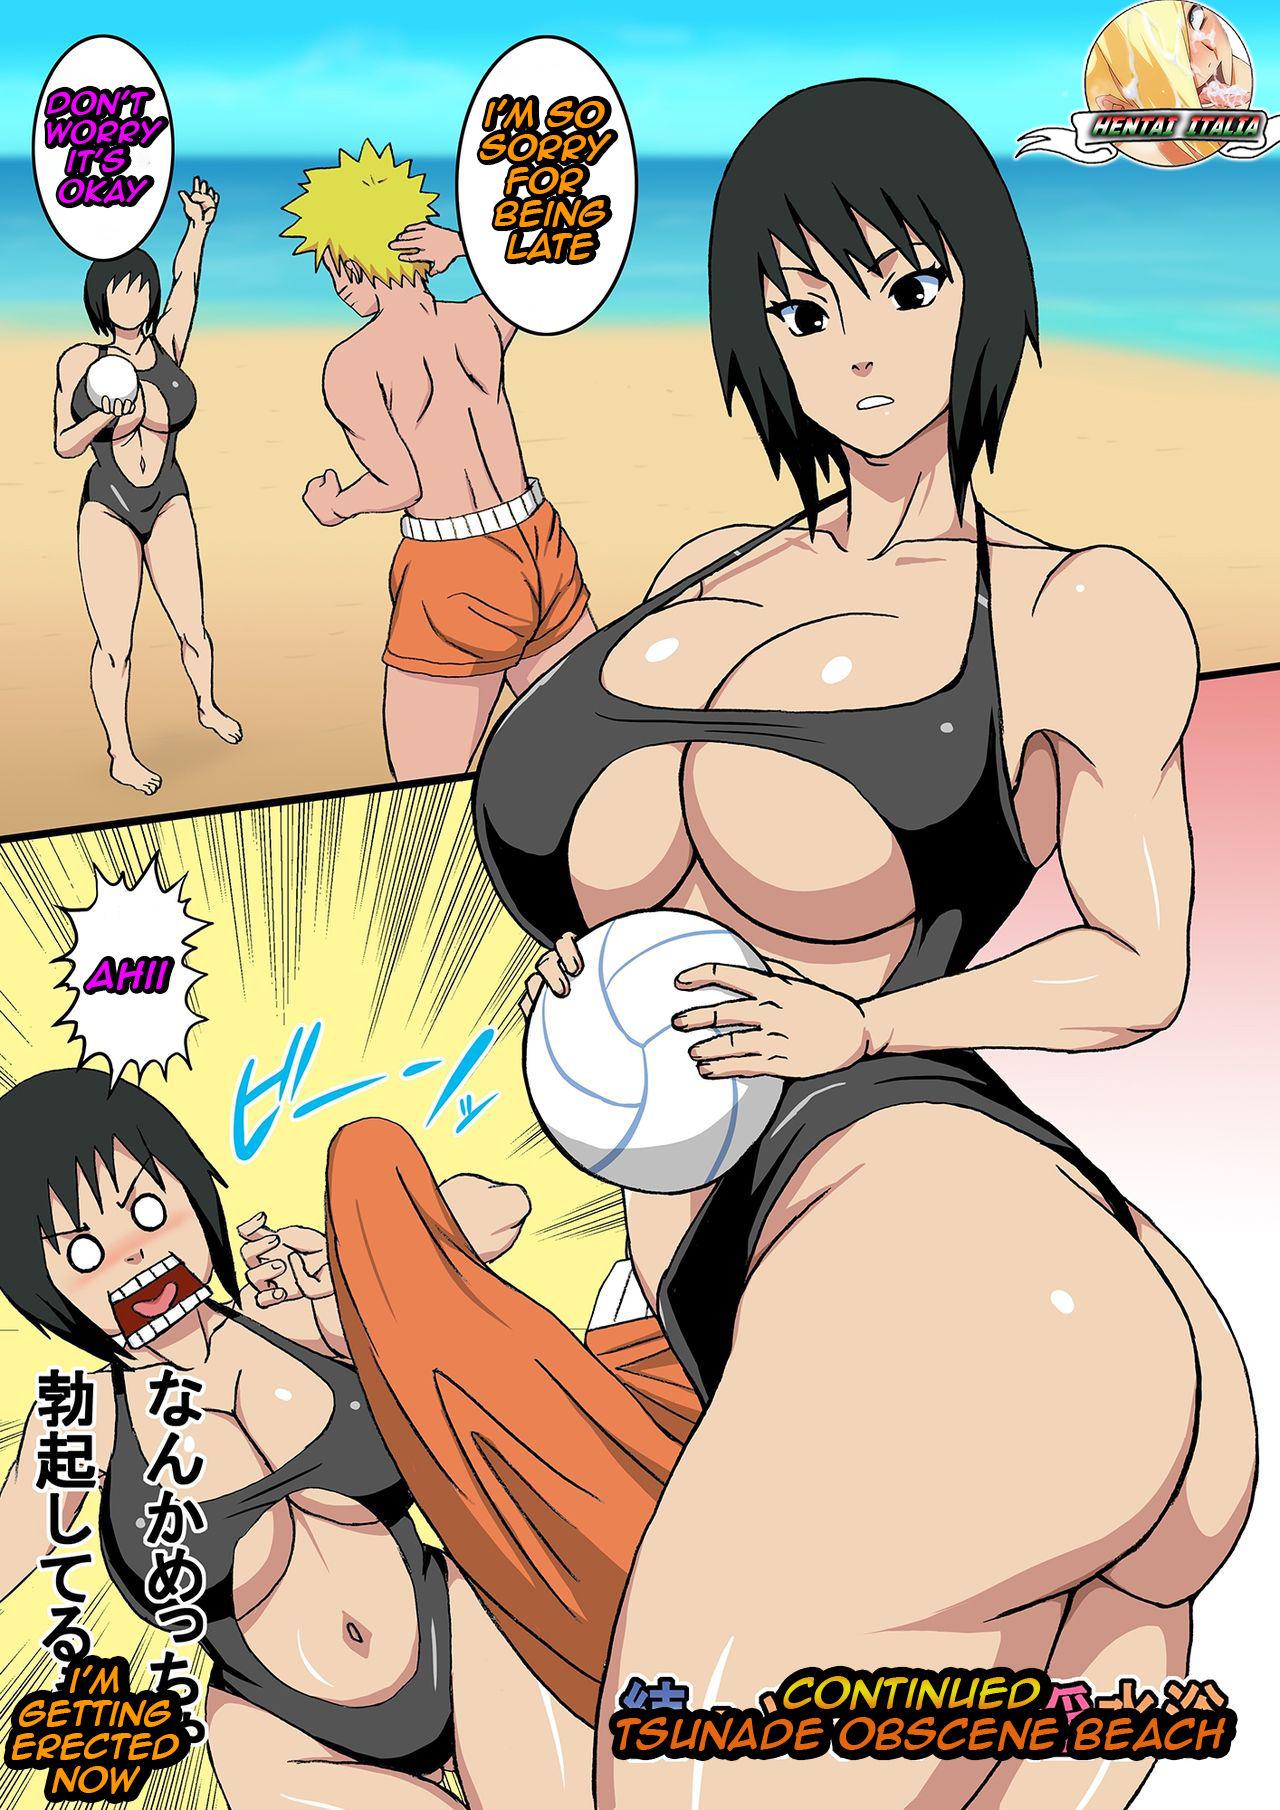 Masturbando After Tsunade Beach - Naruto Threesome - Page 2